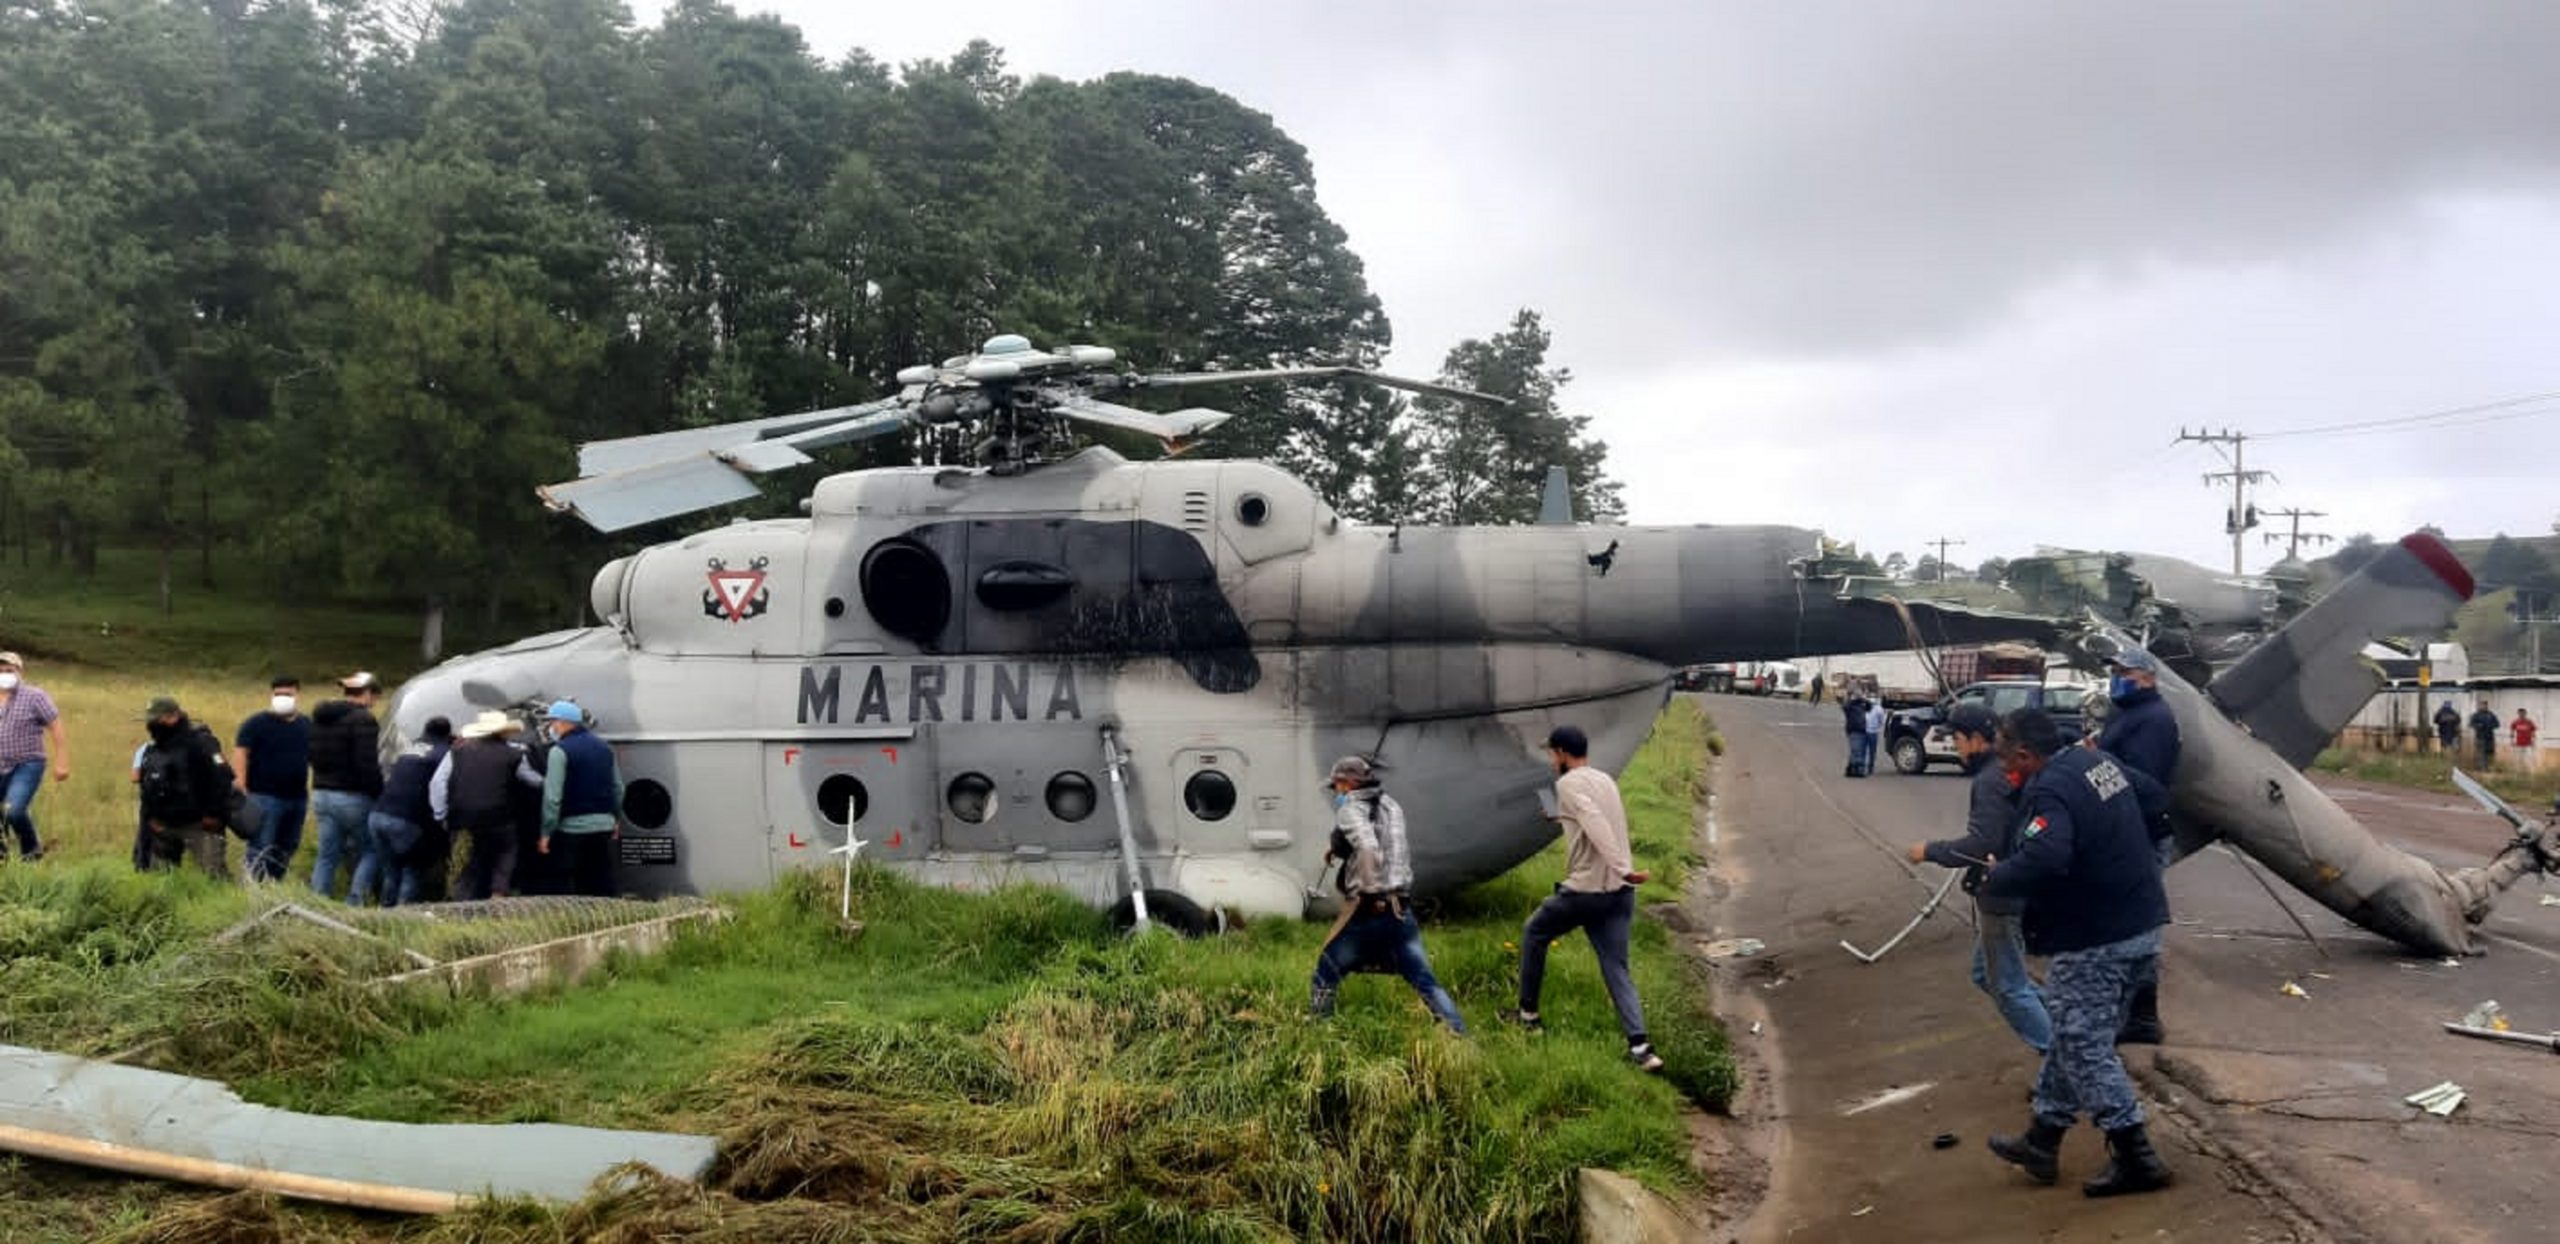 MARINA informa sobre accidente de helicóptero de la Armada de México, ocurrido en el Estado de Hidalgo